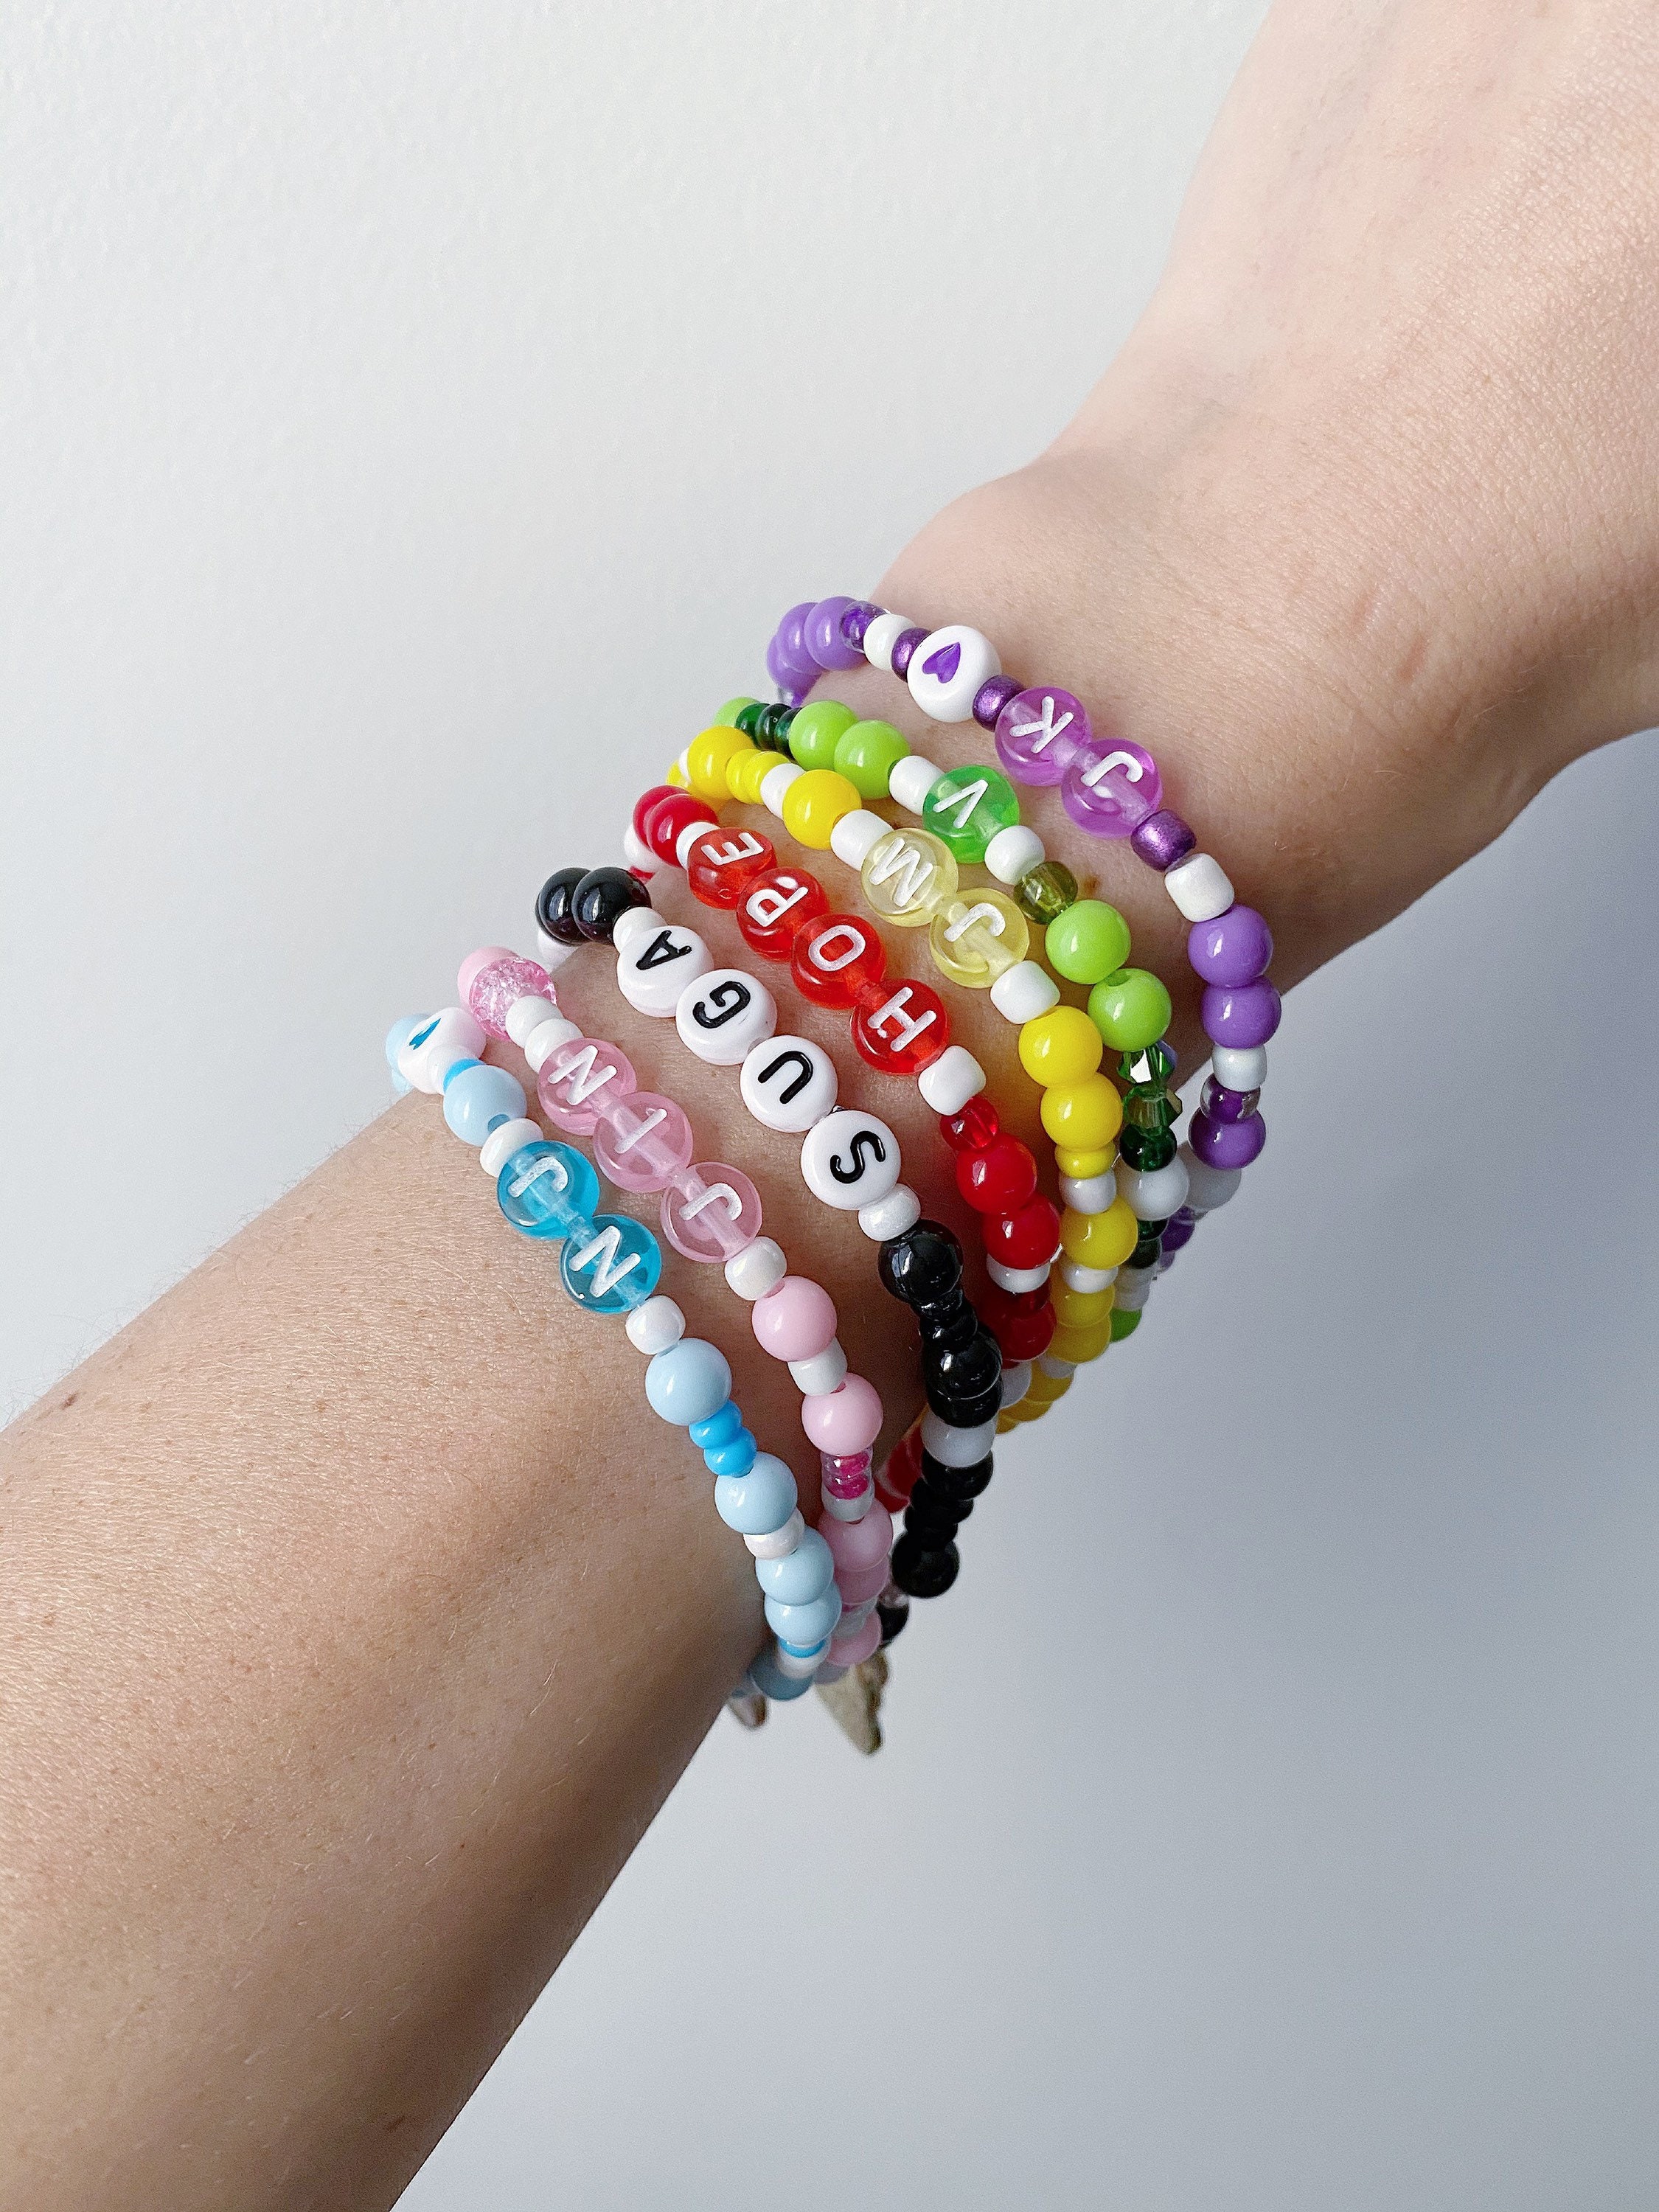 HOBI Inspired BTS Member Bracelets with Charms/Beaded | Etsy